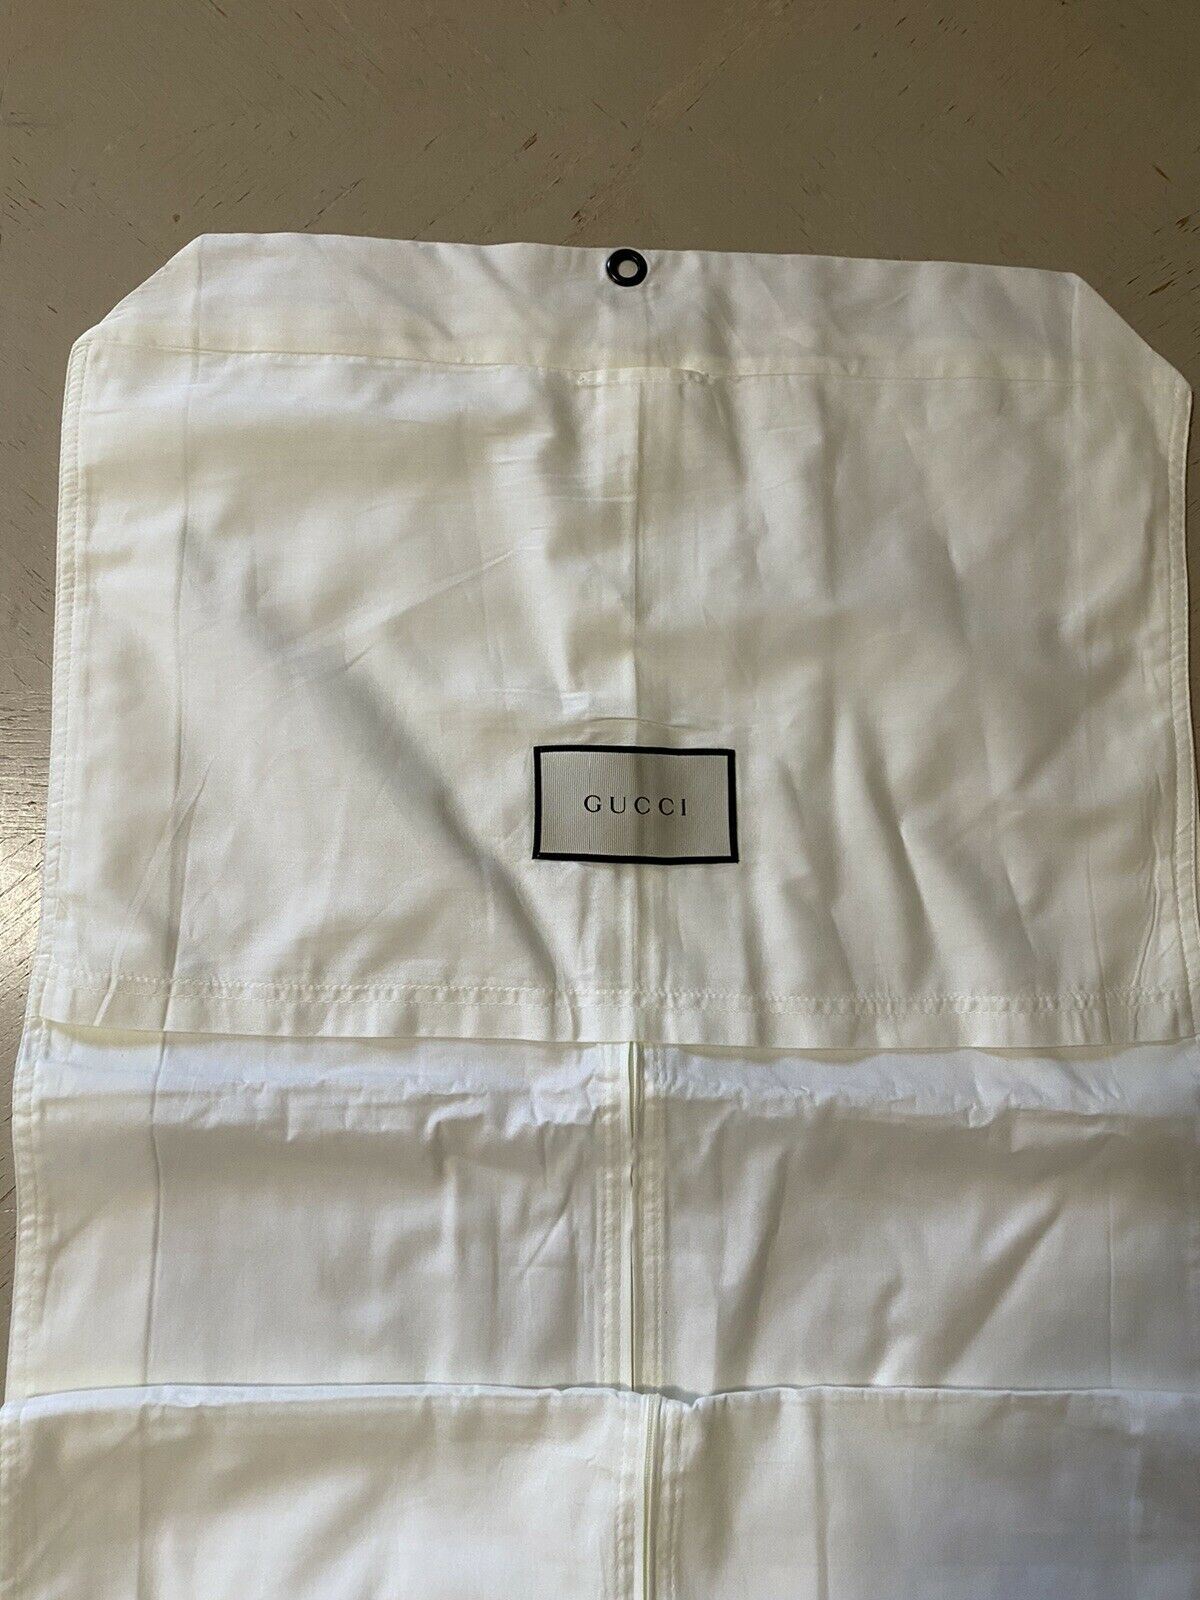 Совершенно новый костюм для одежды Gucci, белая сумка унисекс для любой одежды